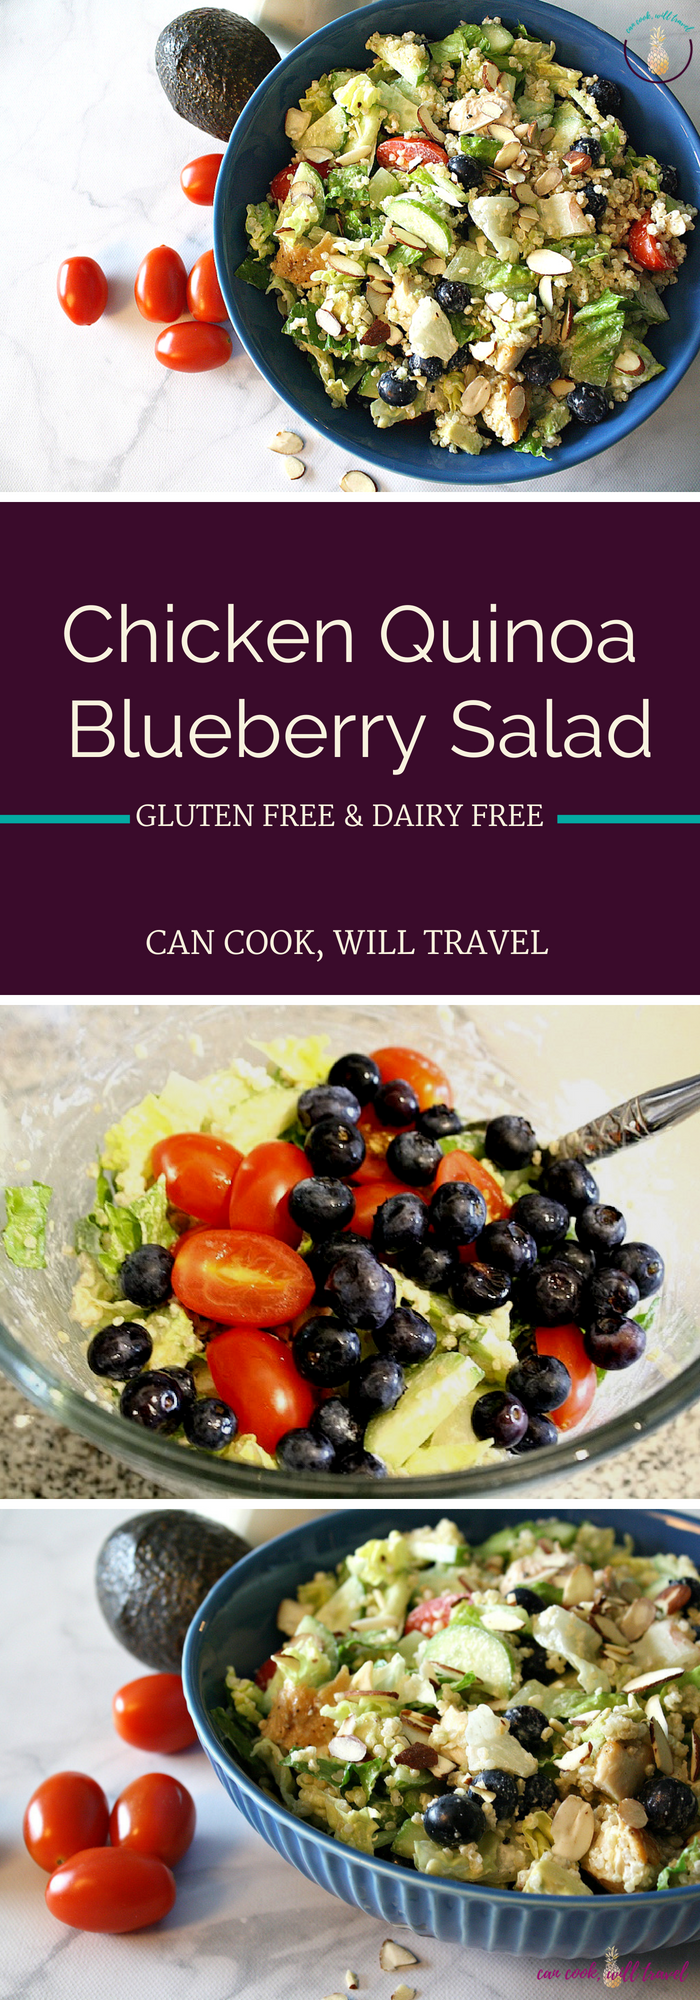 Chicken Quinoa Blueberry Salad_Collage2